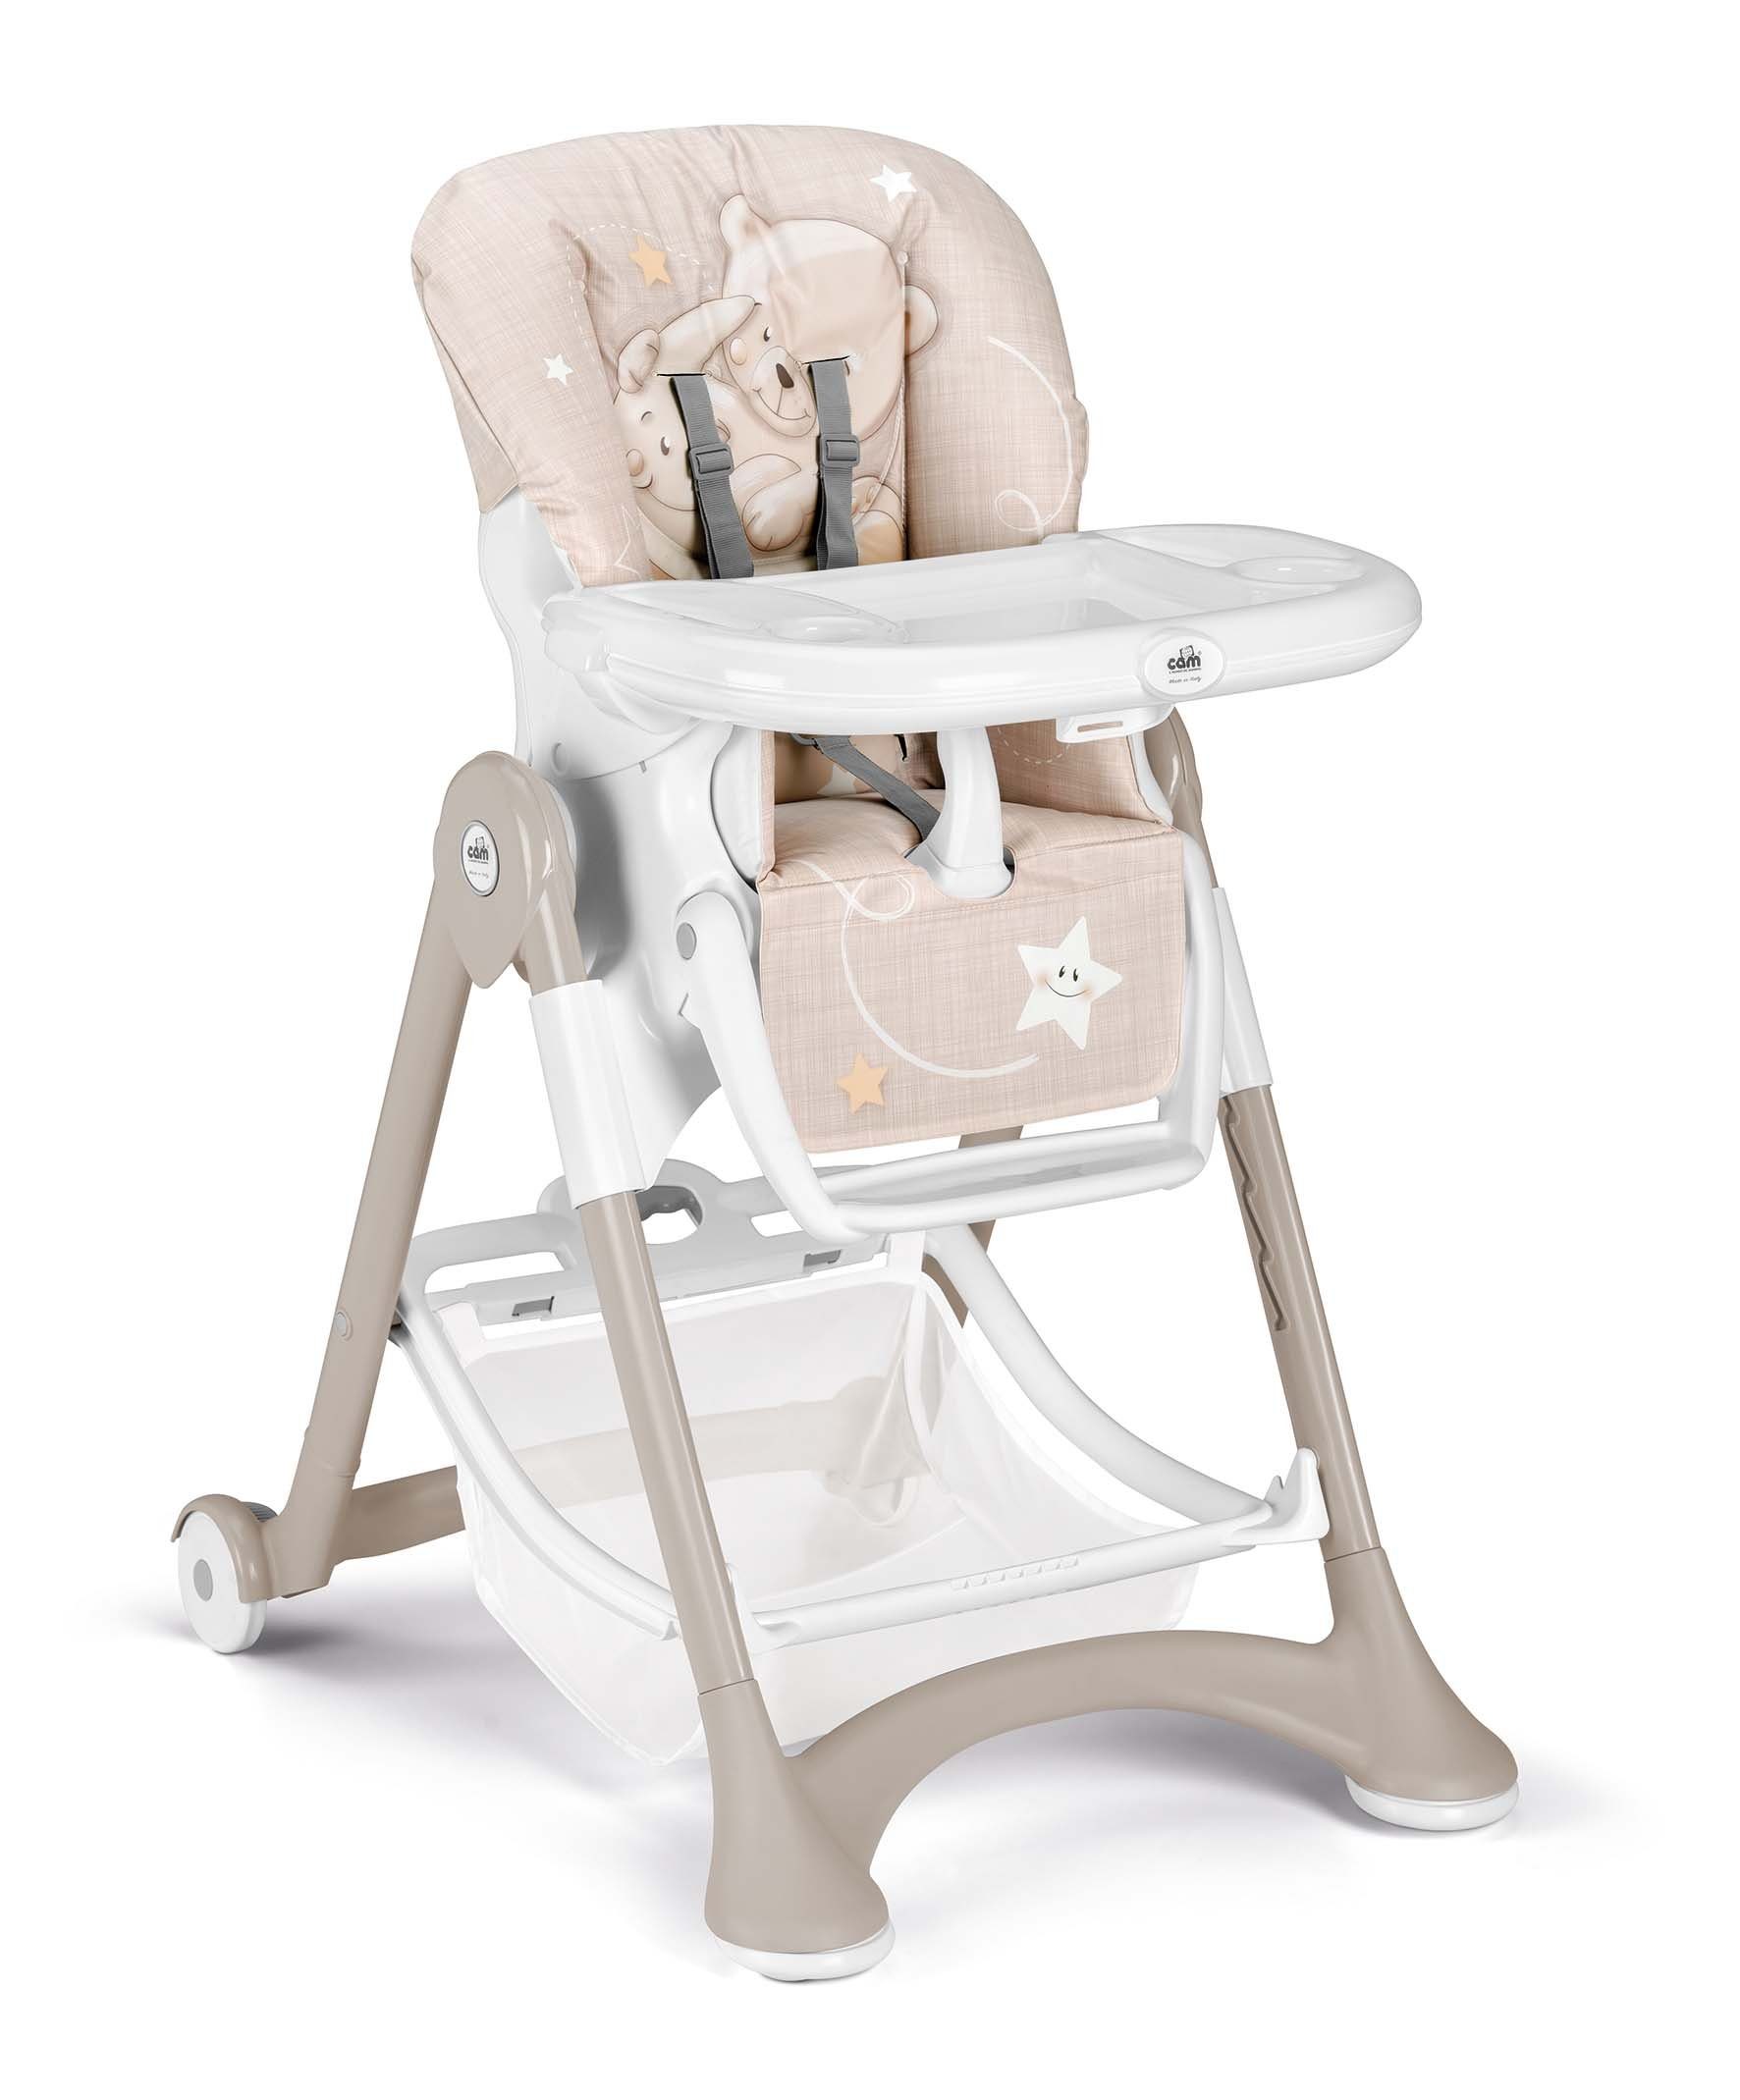 CAM Hochstuhl Cam CAMPIONE - Baby-Stuhl mitwachsend verstellbar inkl. Tablett